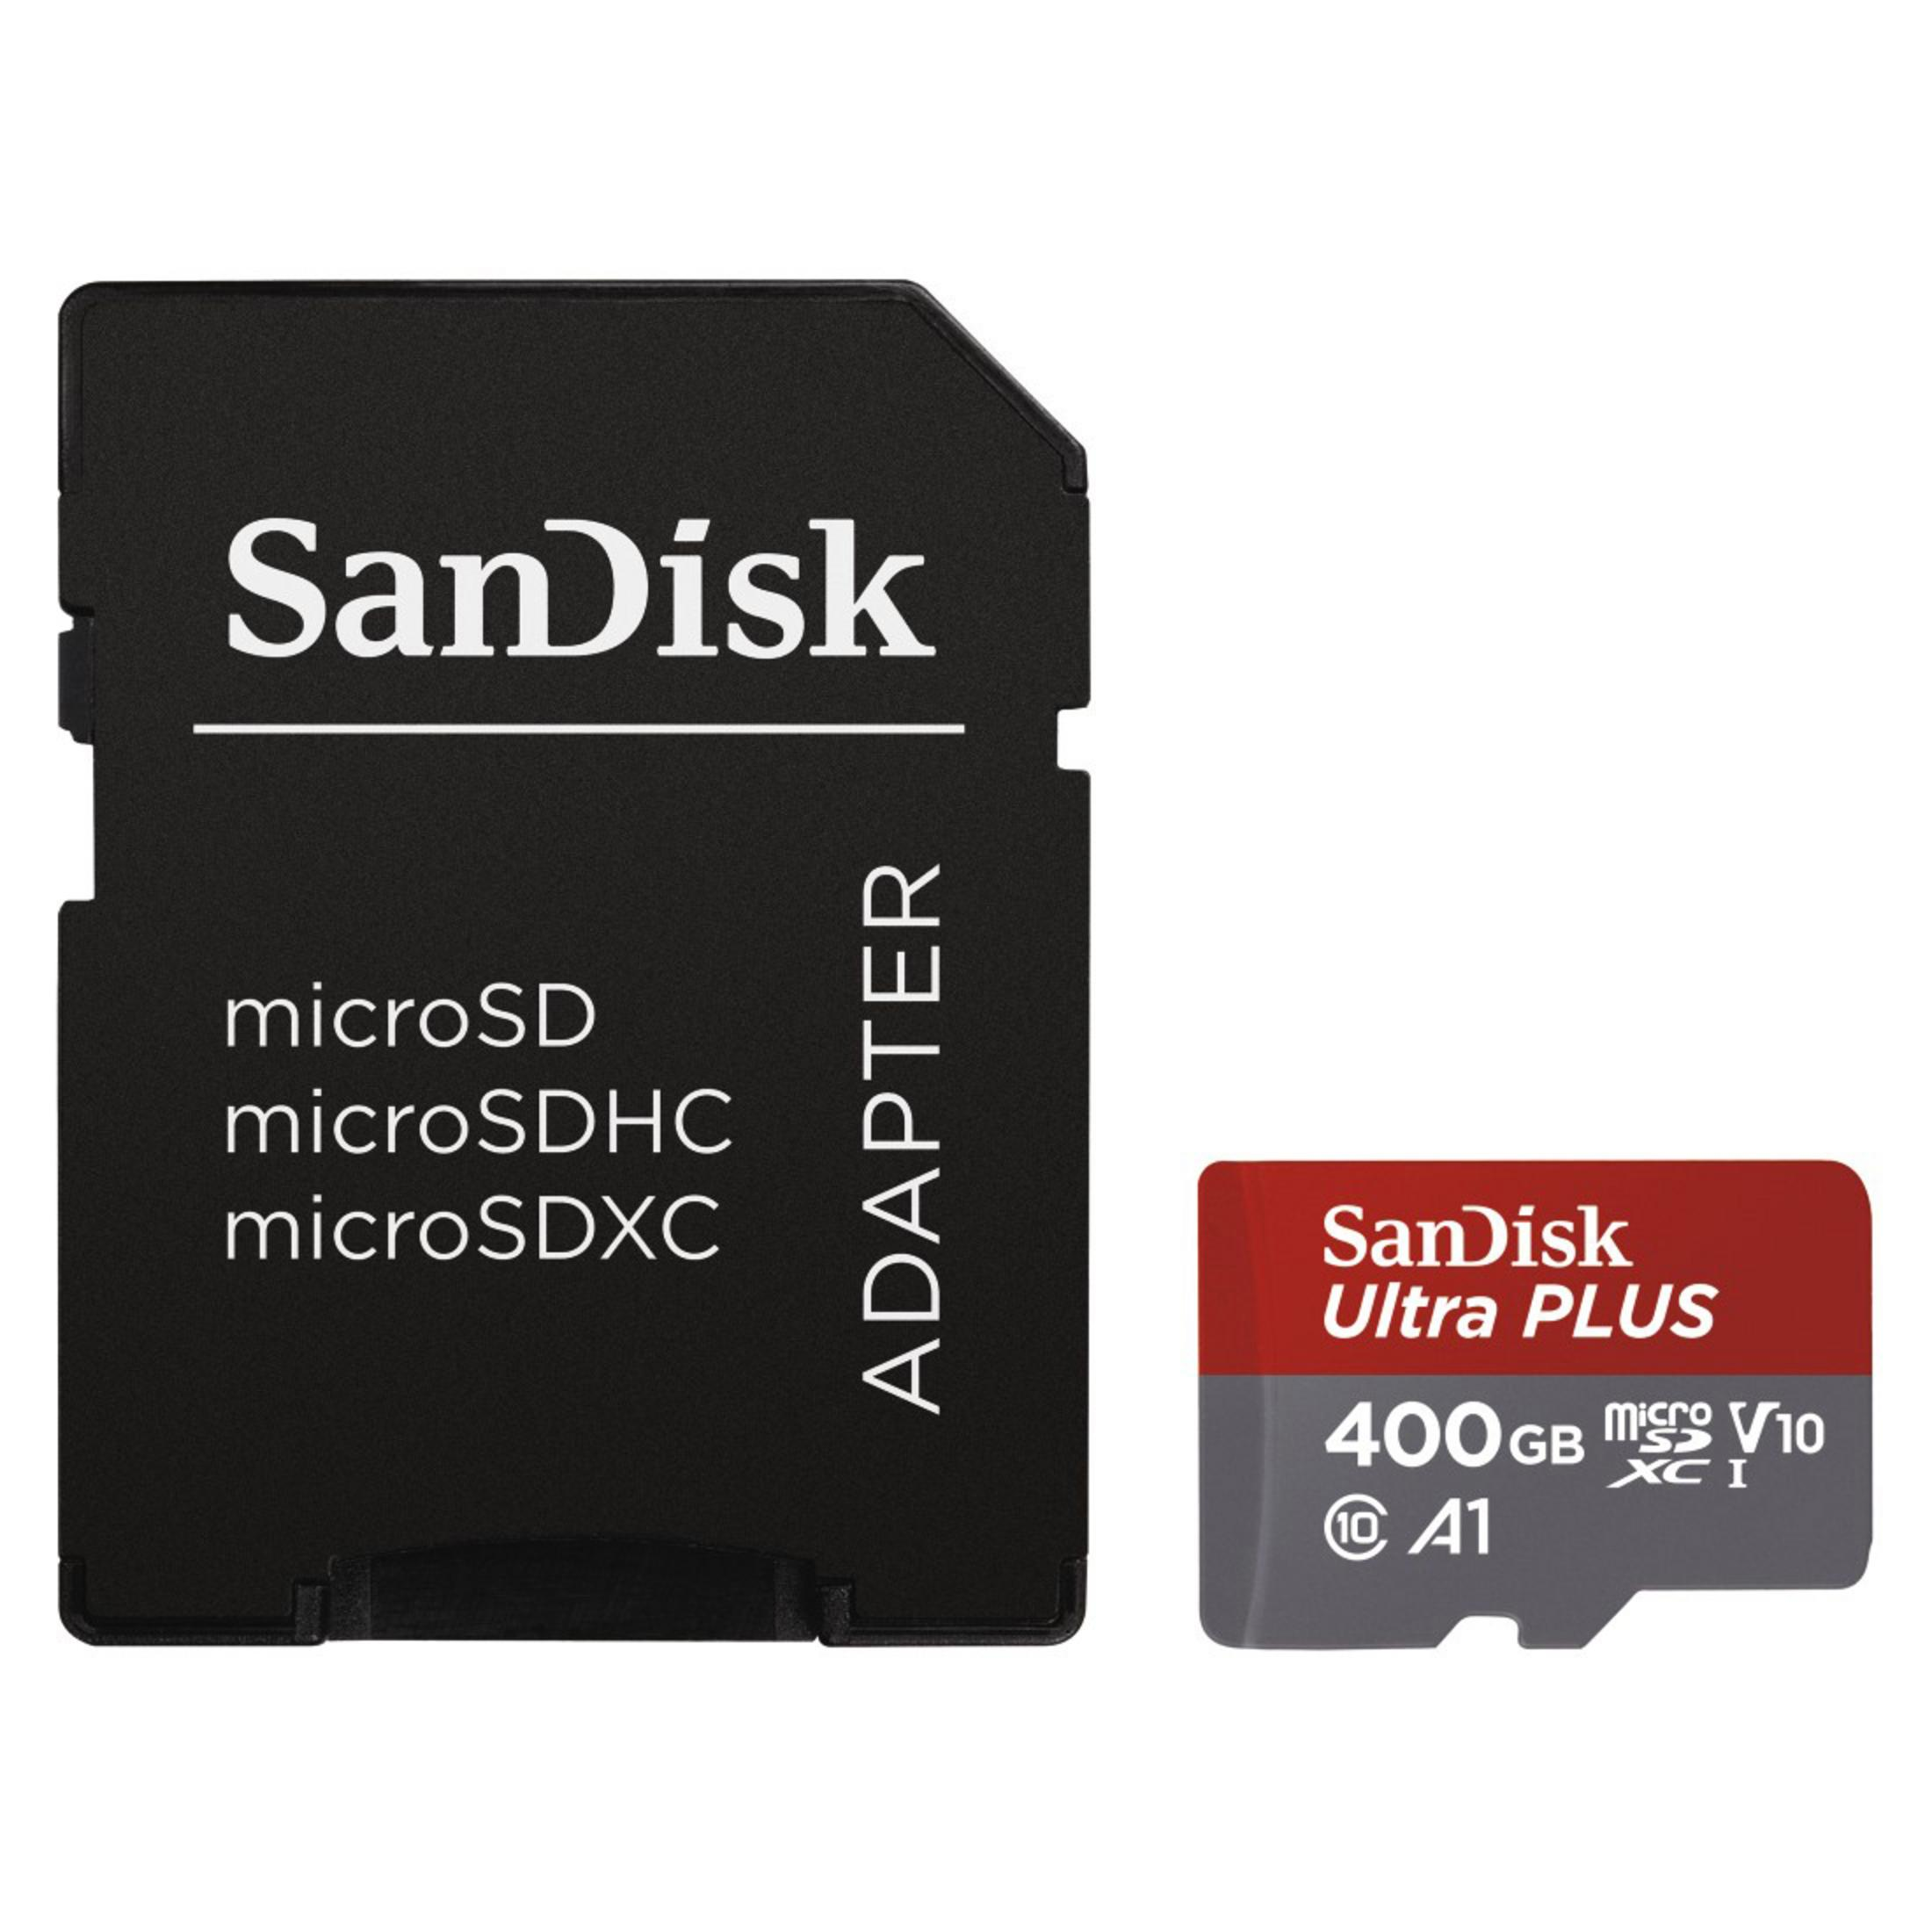 ULT. 100 Micro-SDXC 400GB SANDISK Speicherkarte, 173478 GB, MSDXC 400 (100MB/S,UH, MB/s